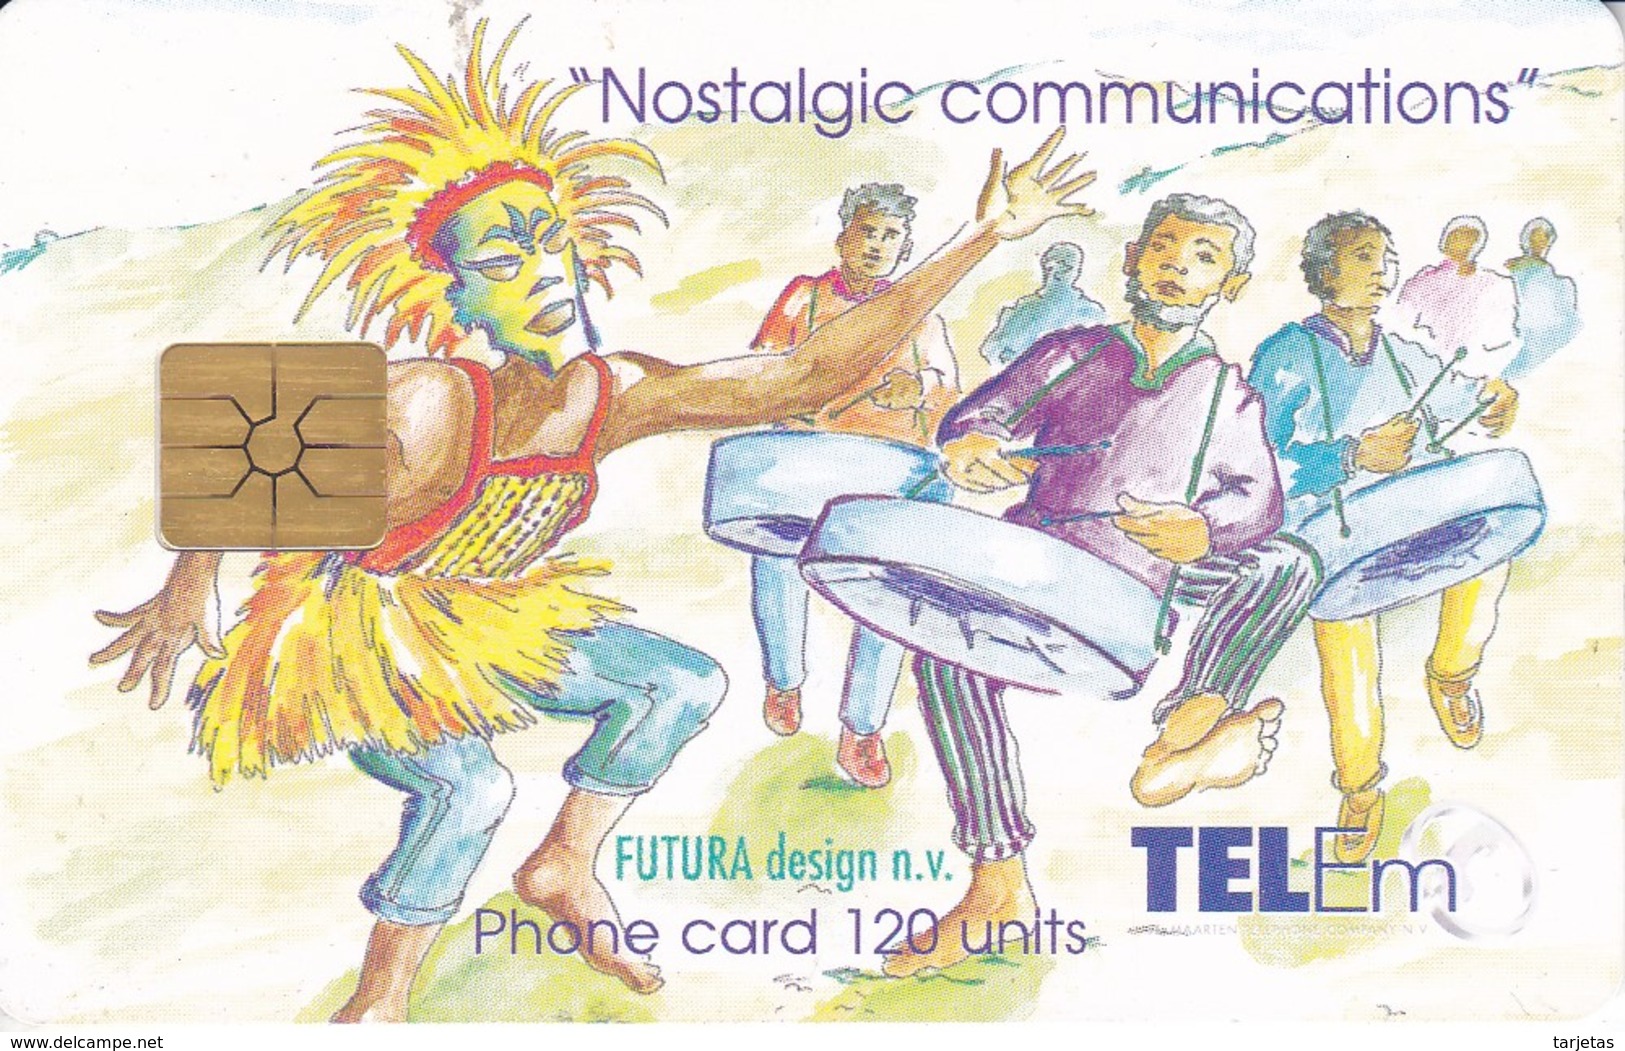 TARJETA DE SAINT MAARTEN  DE NOSTALGIC COMMUNICATIONS - Antillas (Nerlandesas)